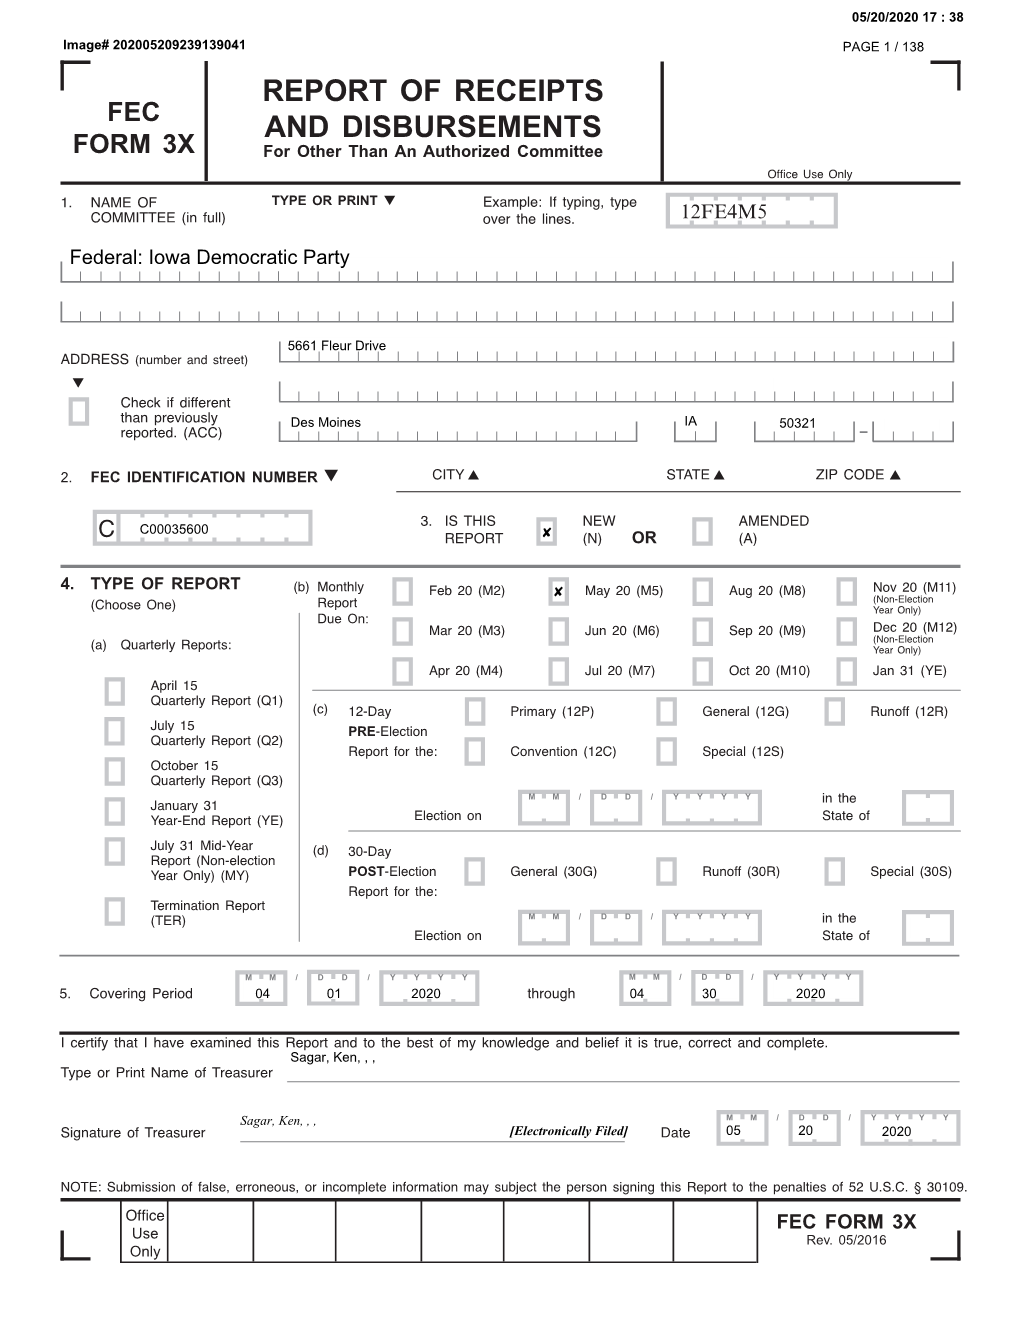 Fec Form 3X Report of Receipts and Disbursements